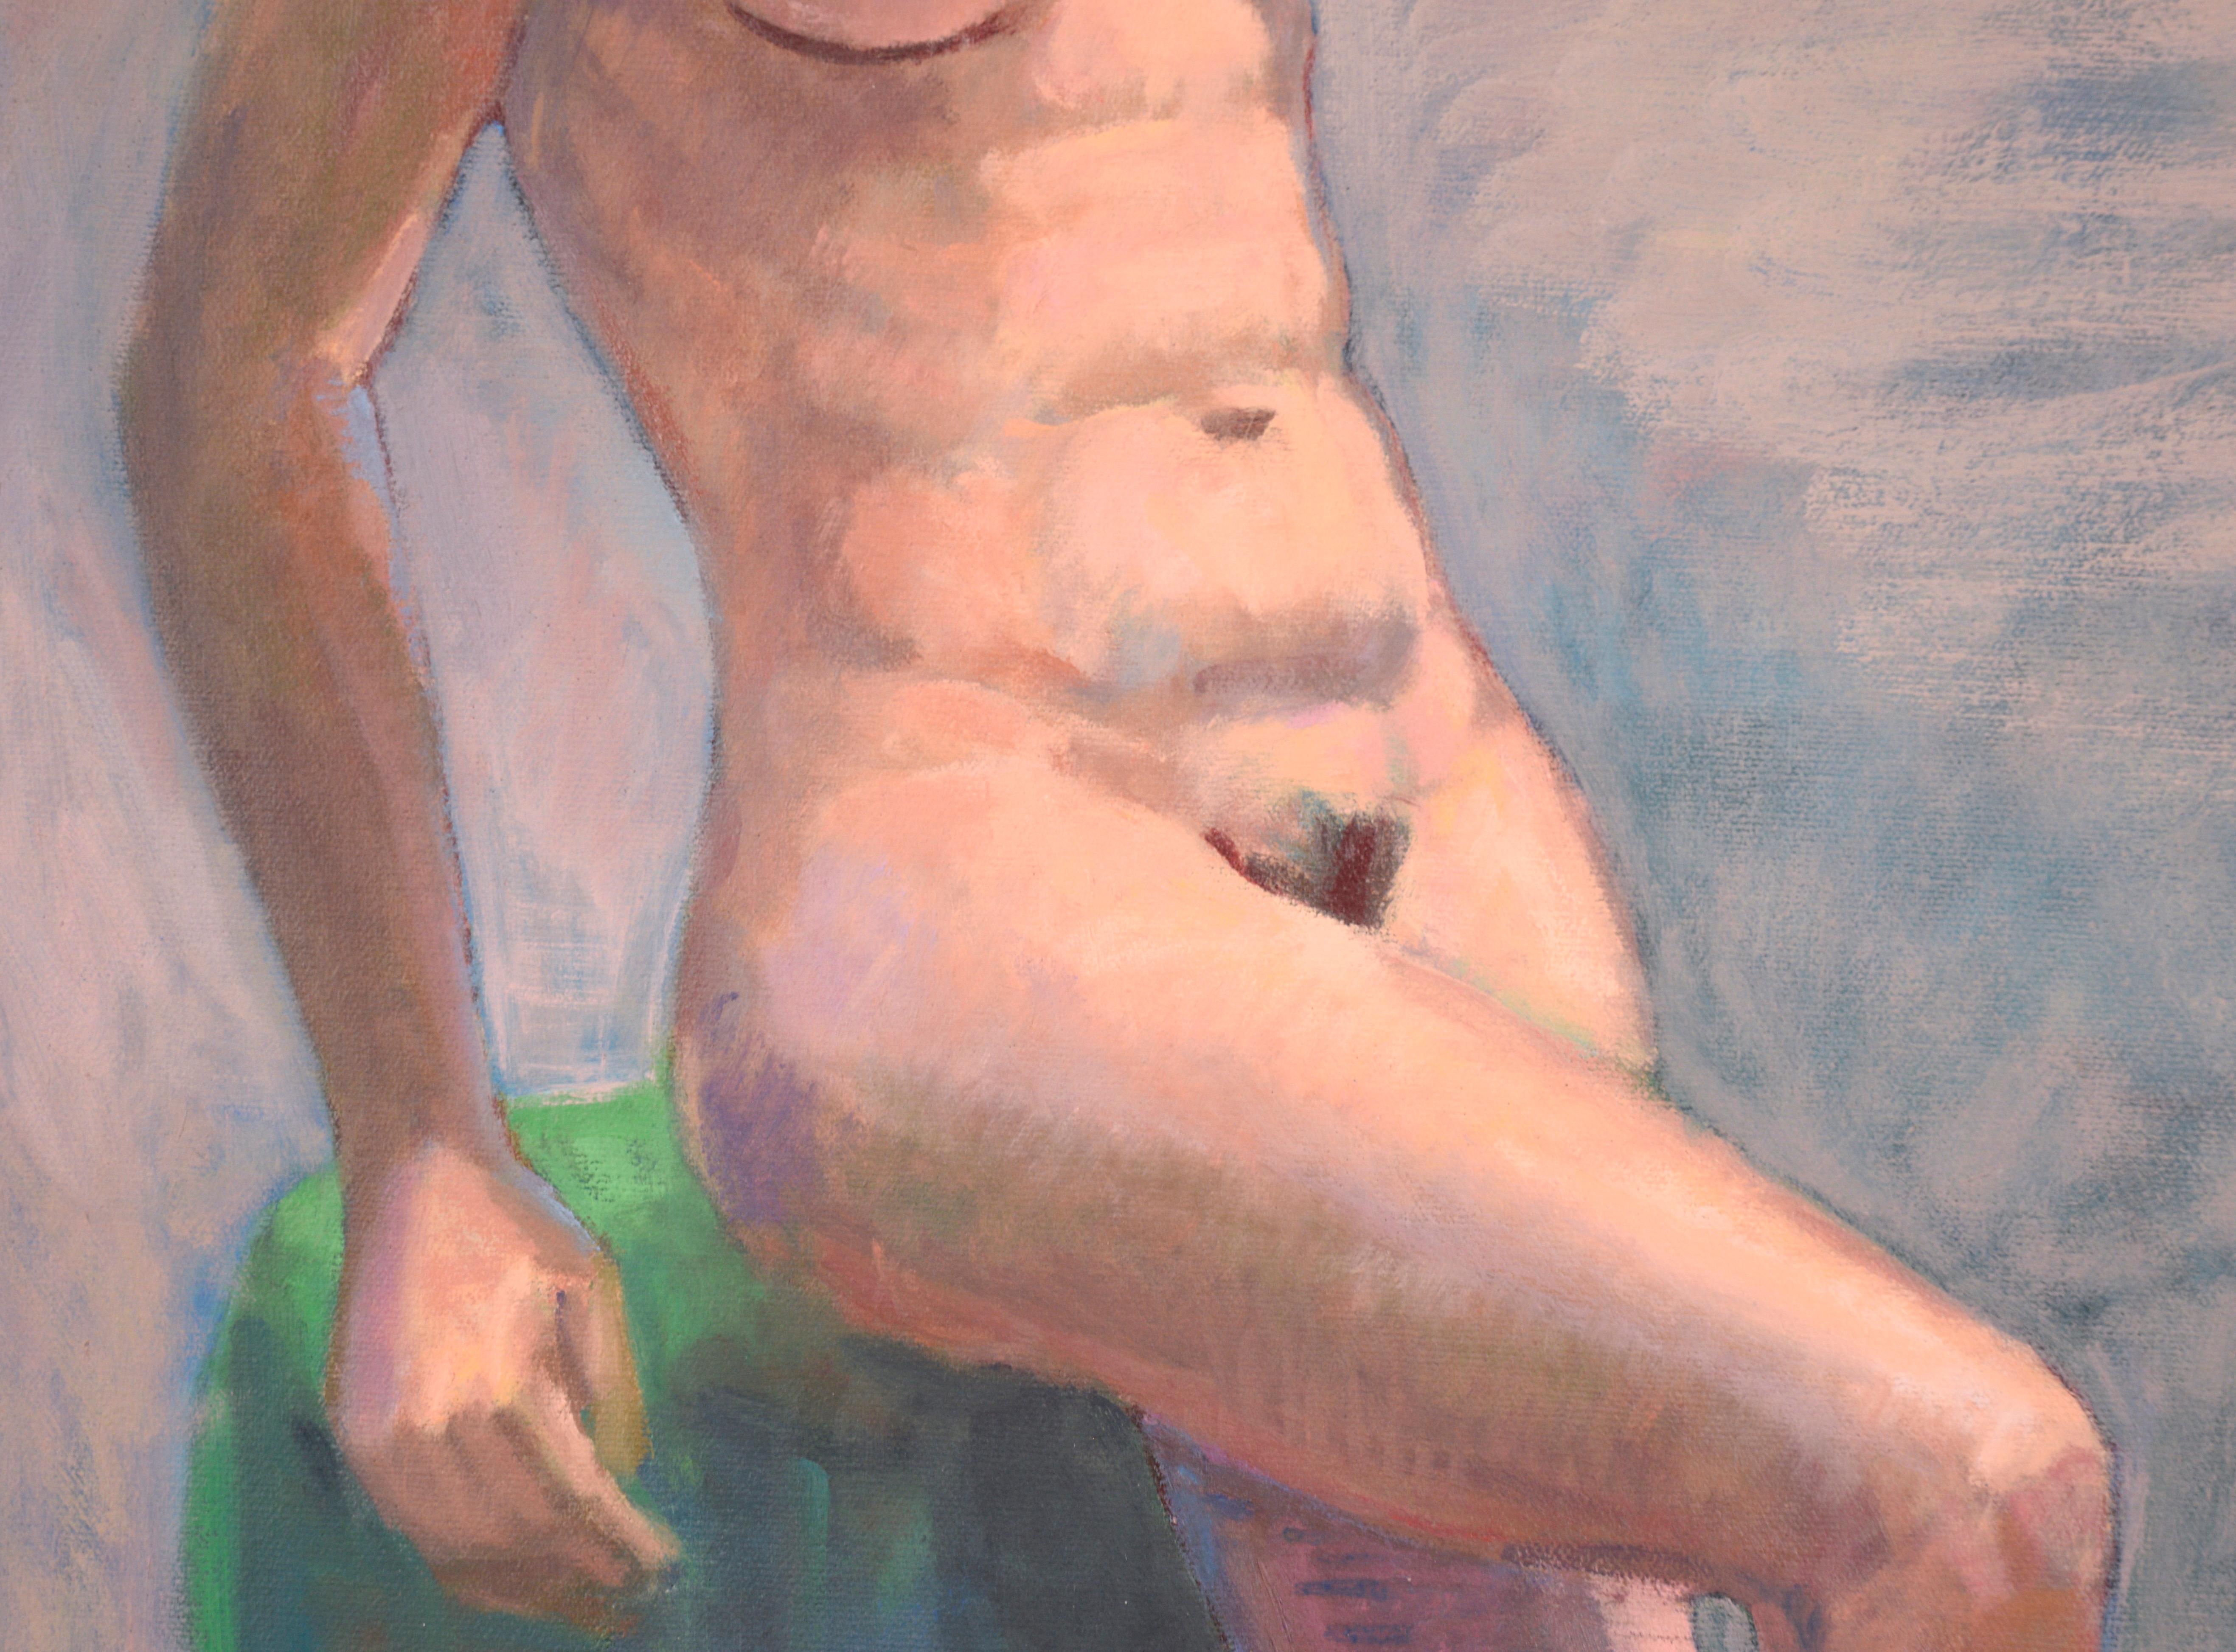 Magnifique peinture impressionniste moderne d'une femme nue par l'artiste de la baie George Wishon (américain, né au 20e siècle). Le contraste entre les couleurs chaudes et froides ajoute une belle vivacité à la composition.

Signé 